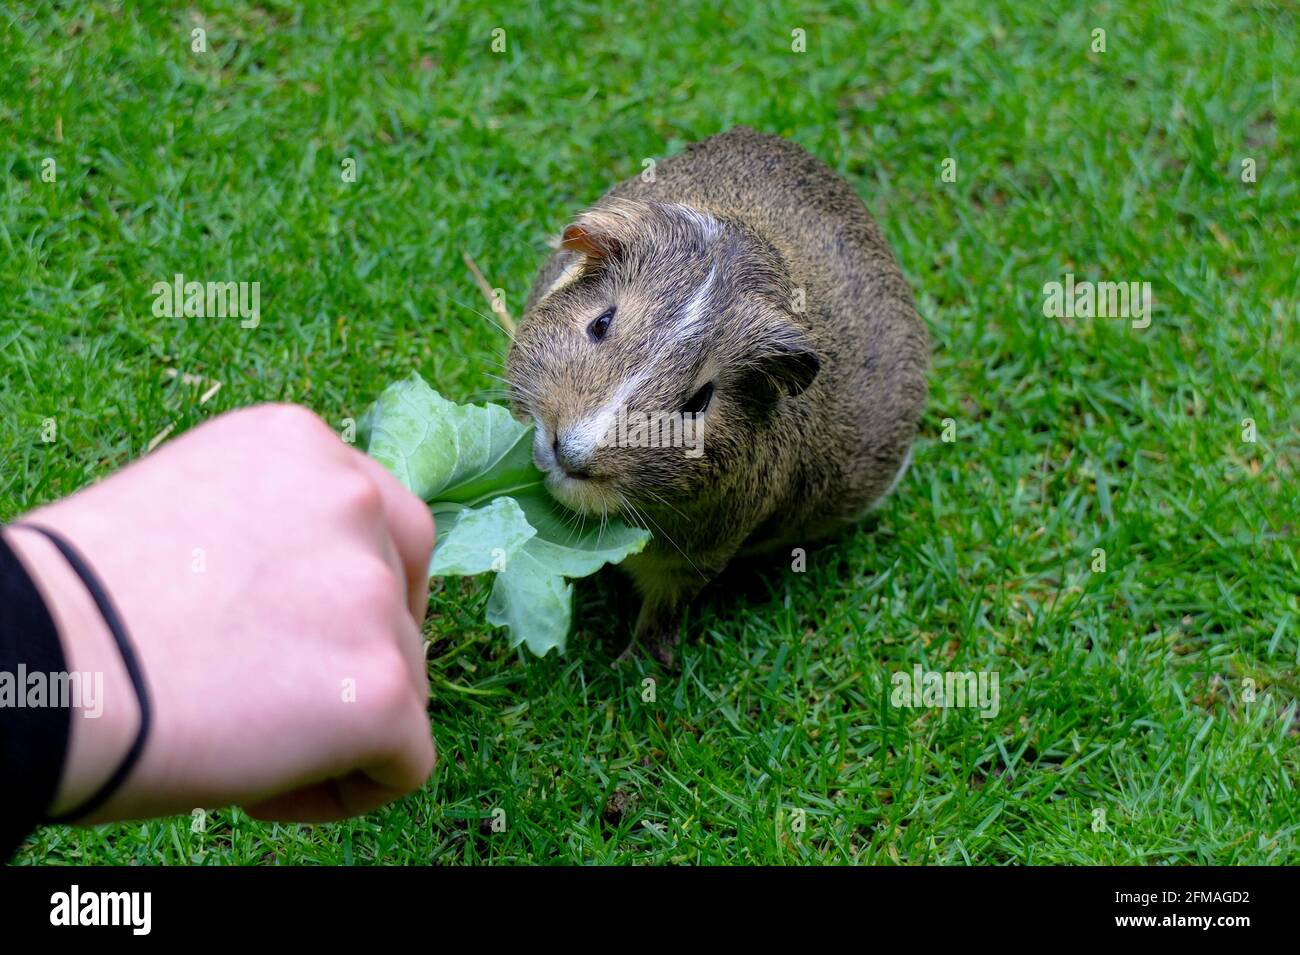 Guinea pig (Cavia porcellus) eats a leaf Stock Photo